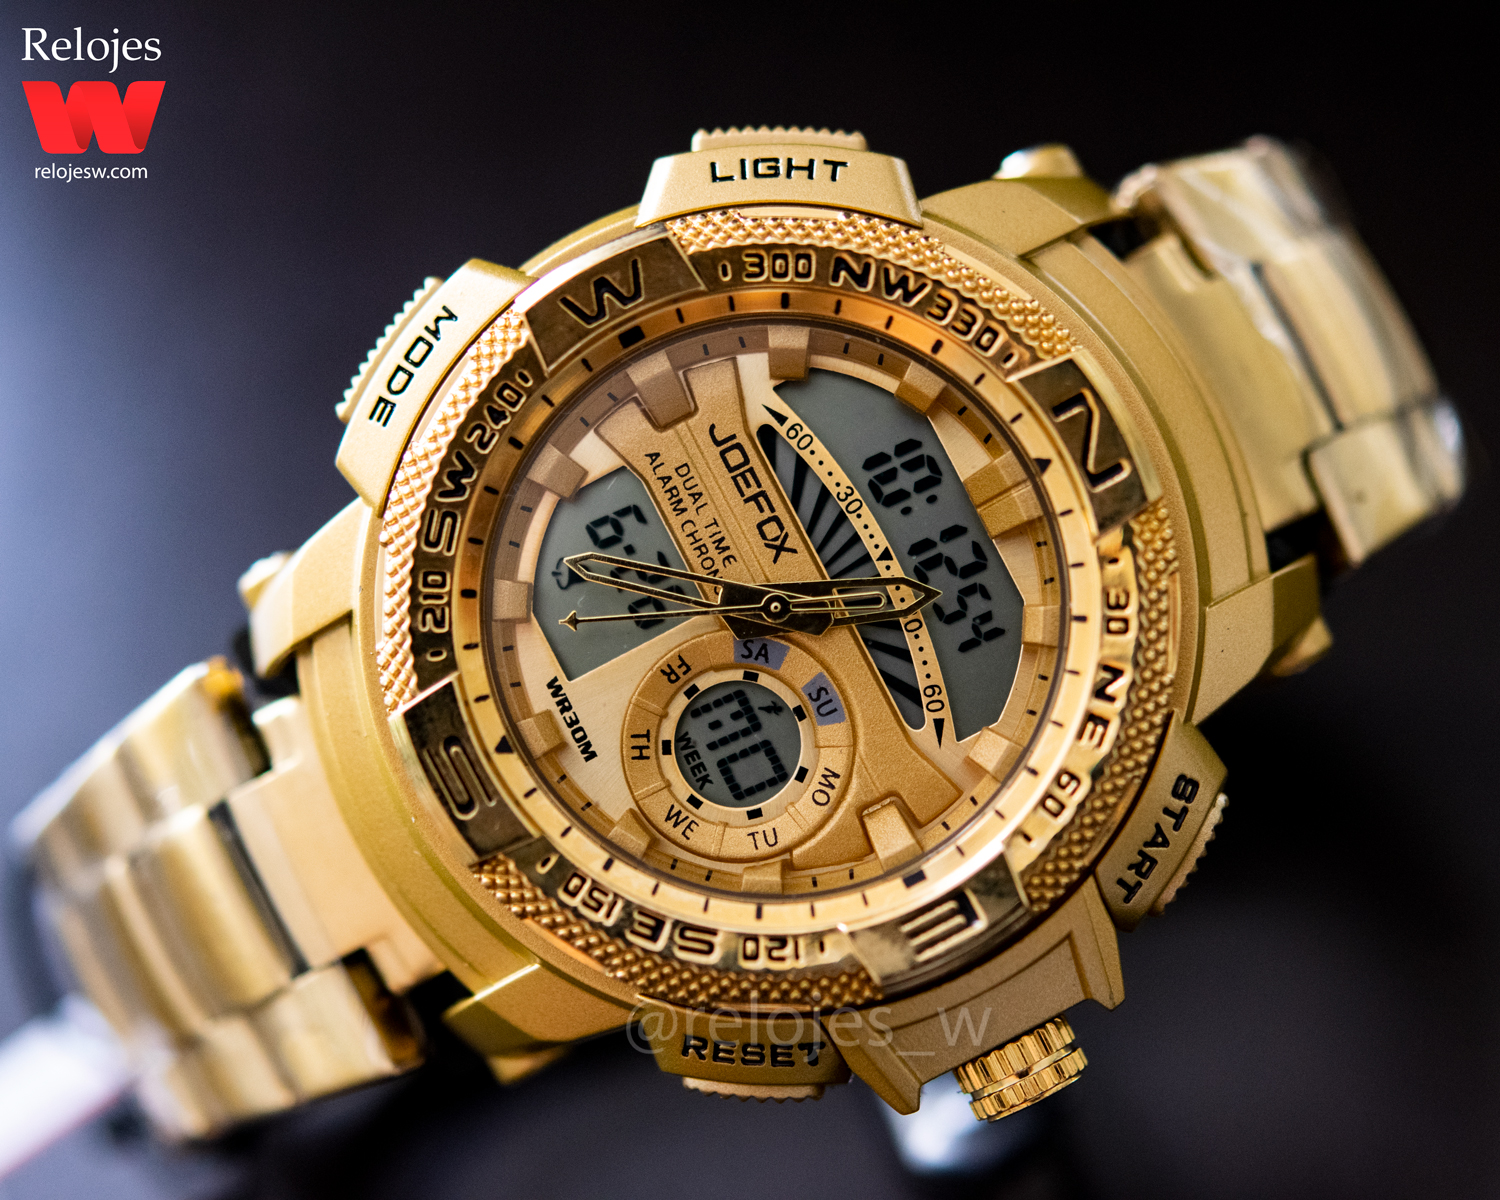 Relojes W on Twitter: "@JaderMa88515579 buenas tardes, ese reloj original tiene un precio de $79.900" / Twitter